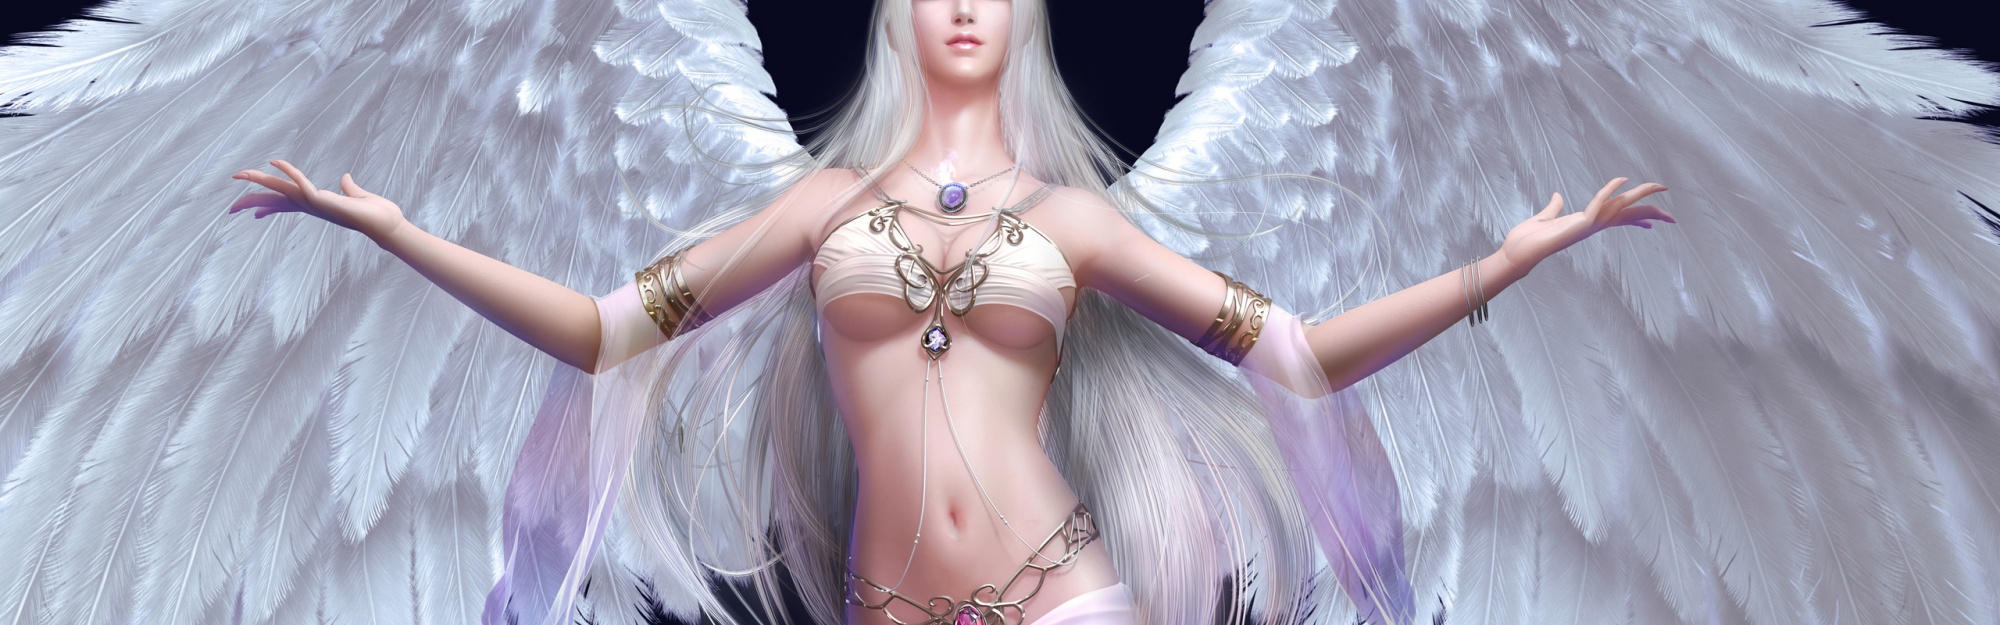 Blonde Wings Fantasy Forsaken World